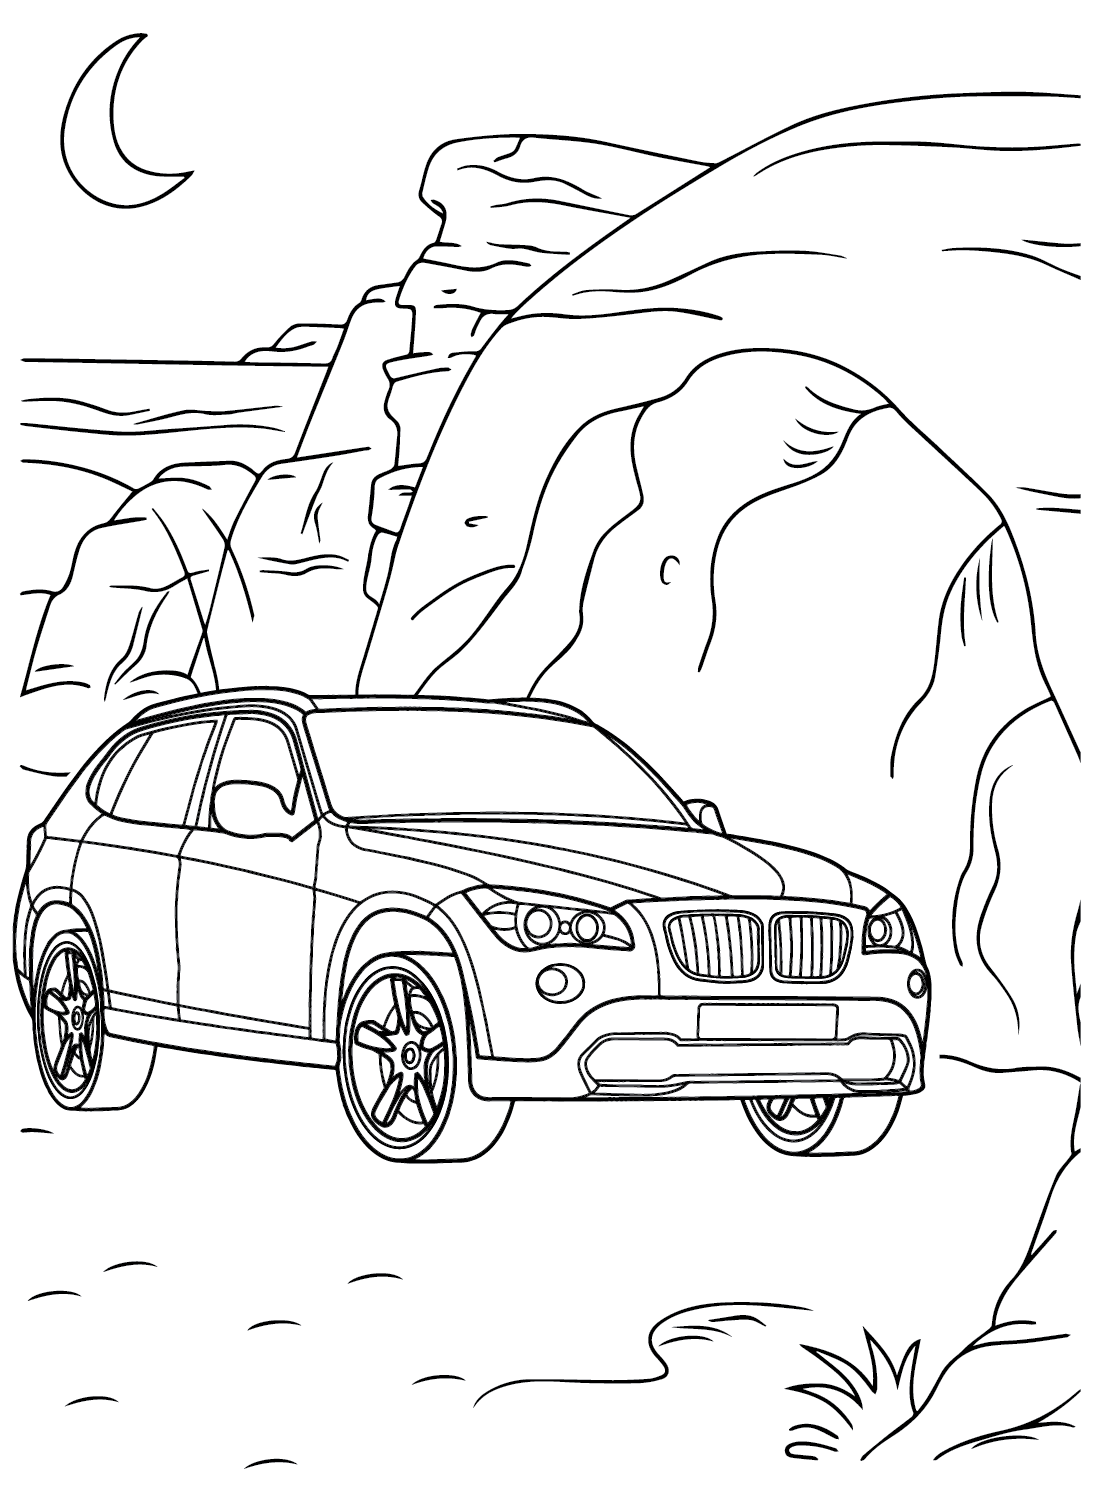 Página para colorir gratuita do BMW X5 da BMW